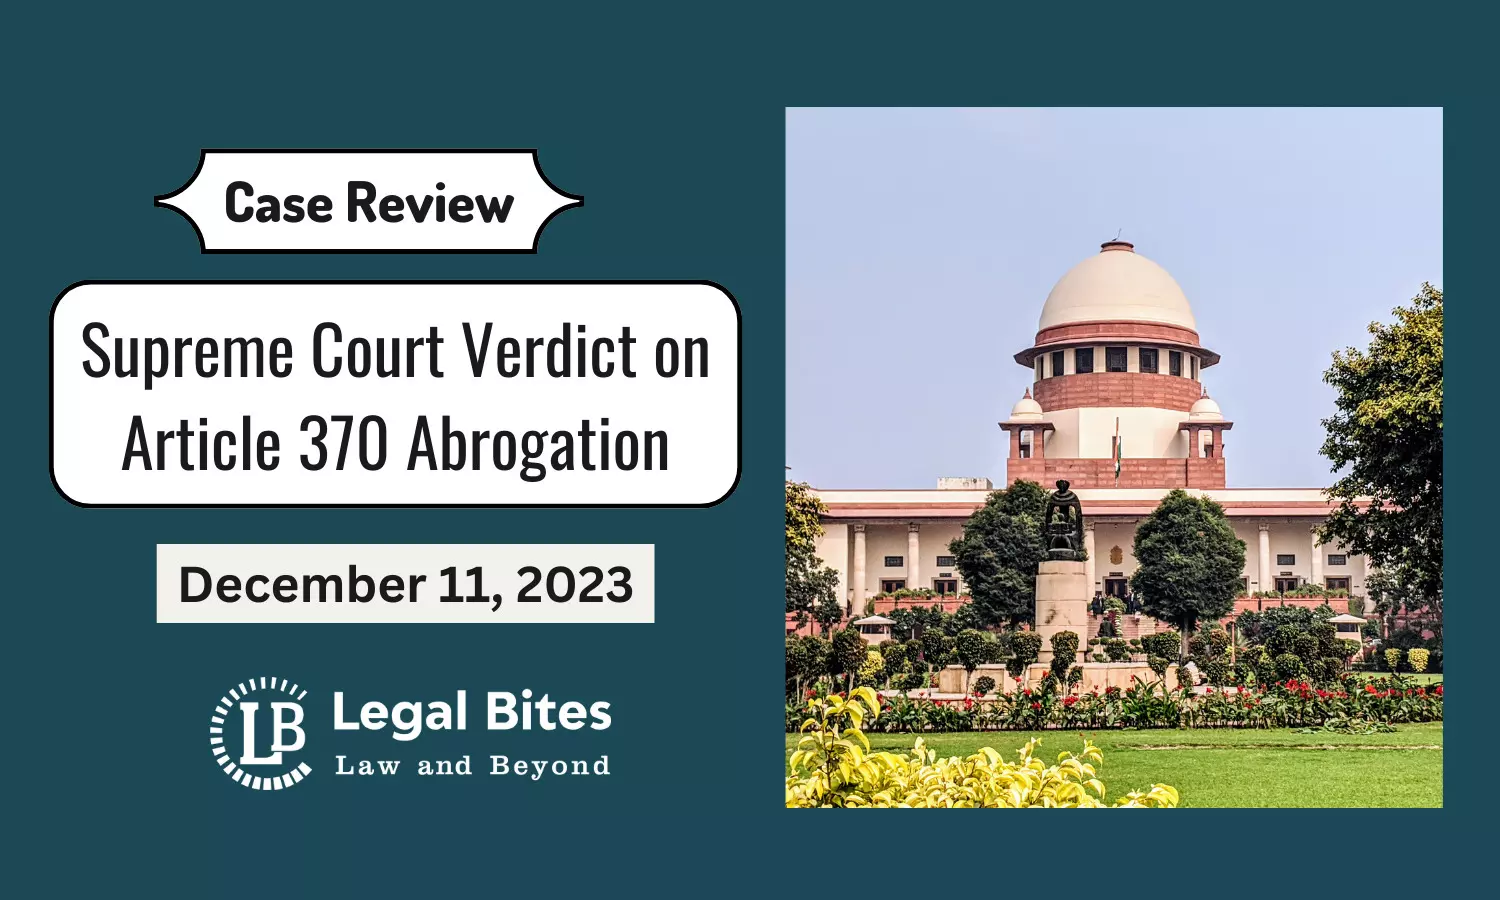 Case Review: Supreme Court Verdict on Article 370 Abrogation